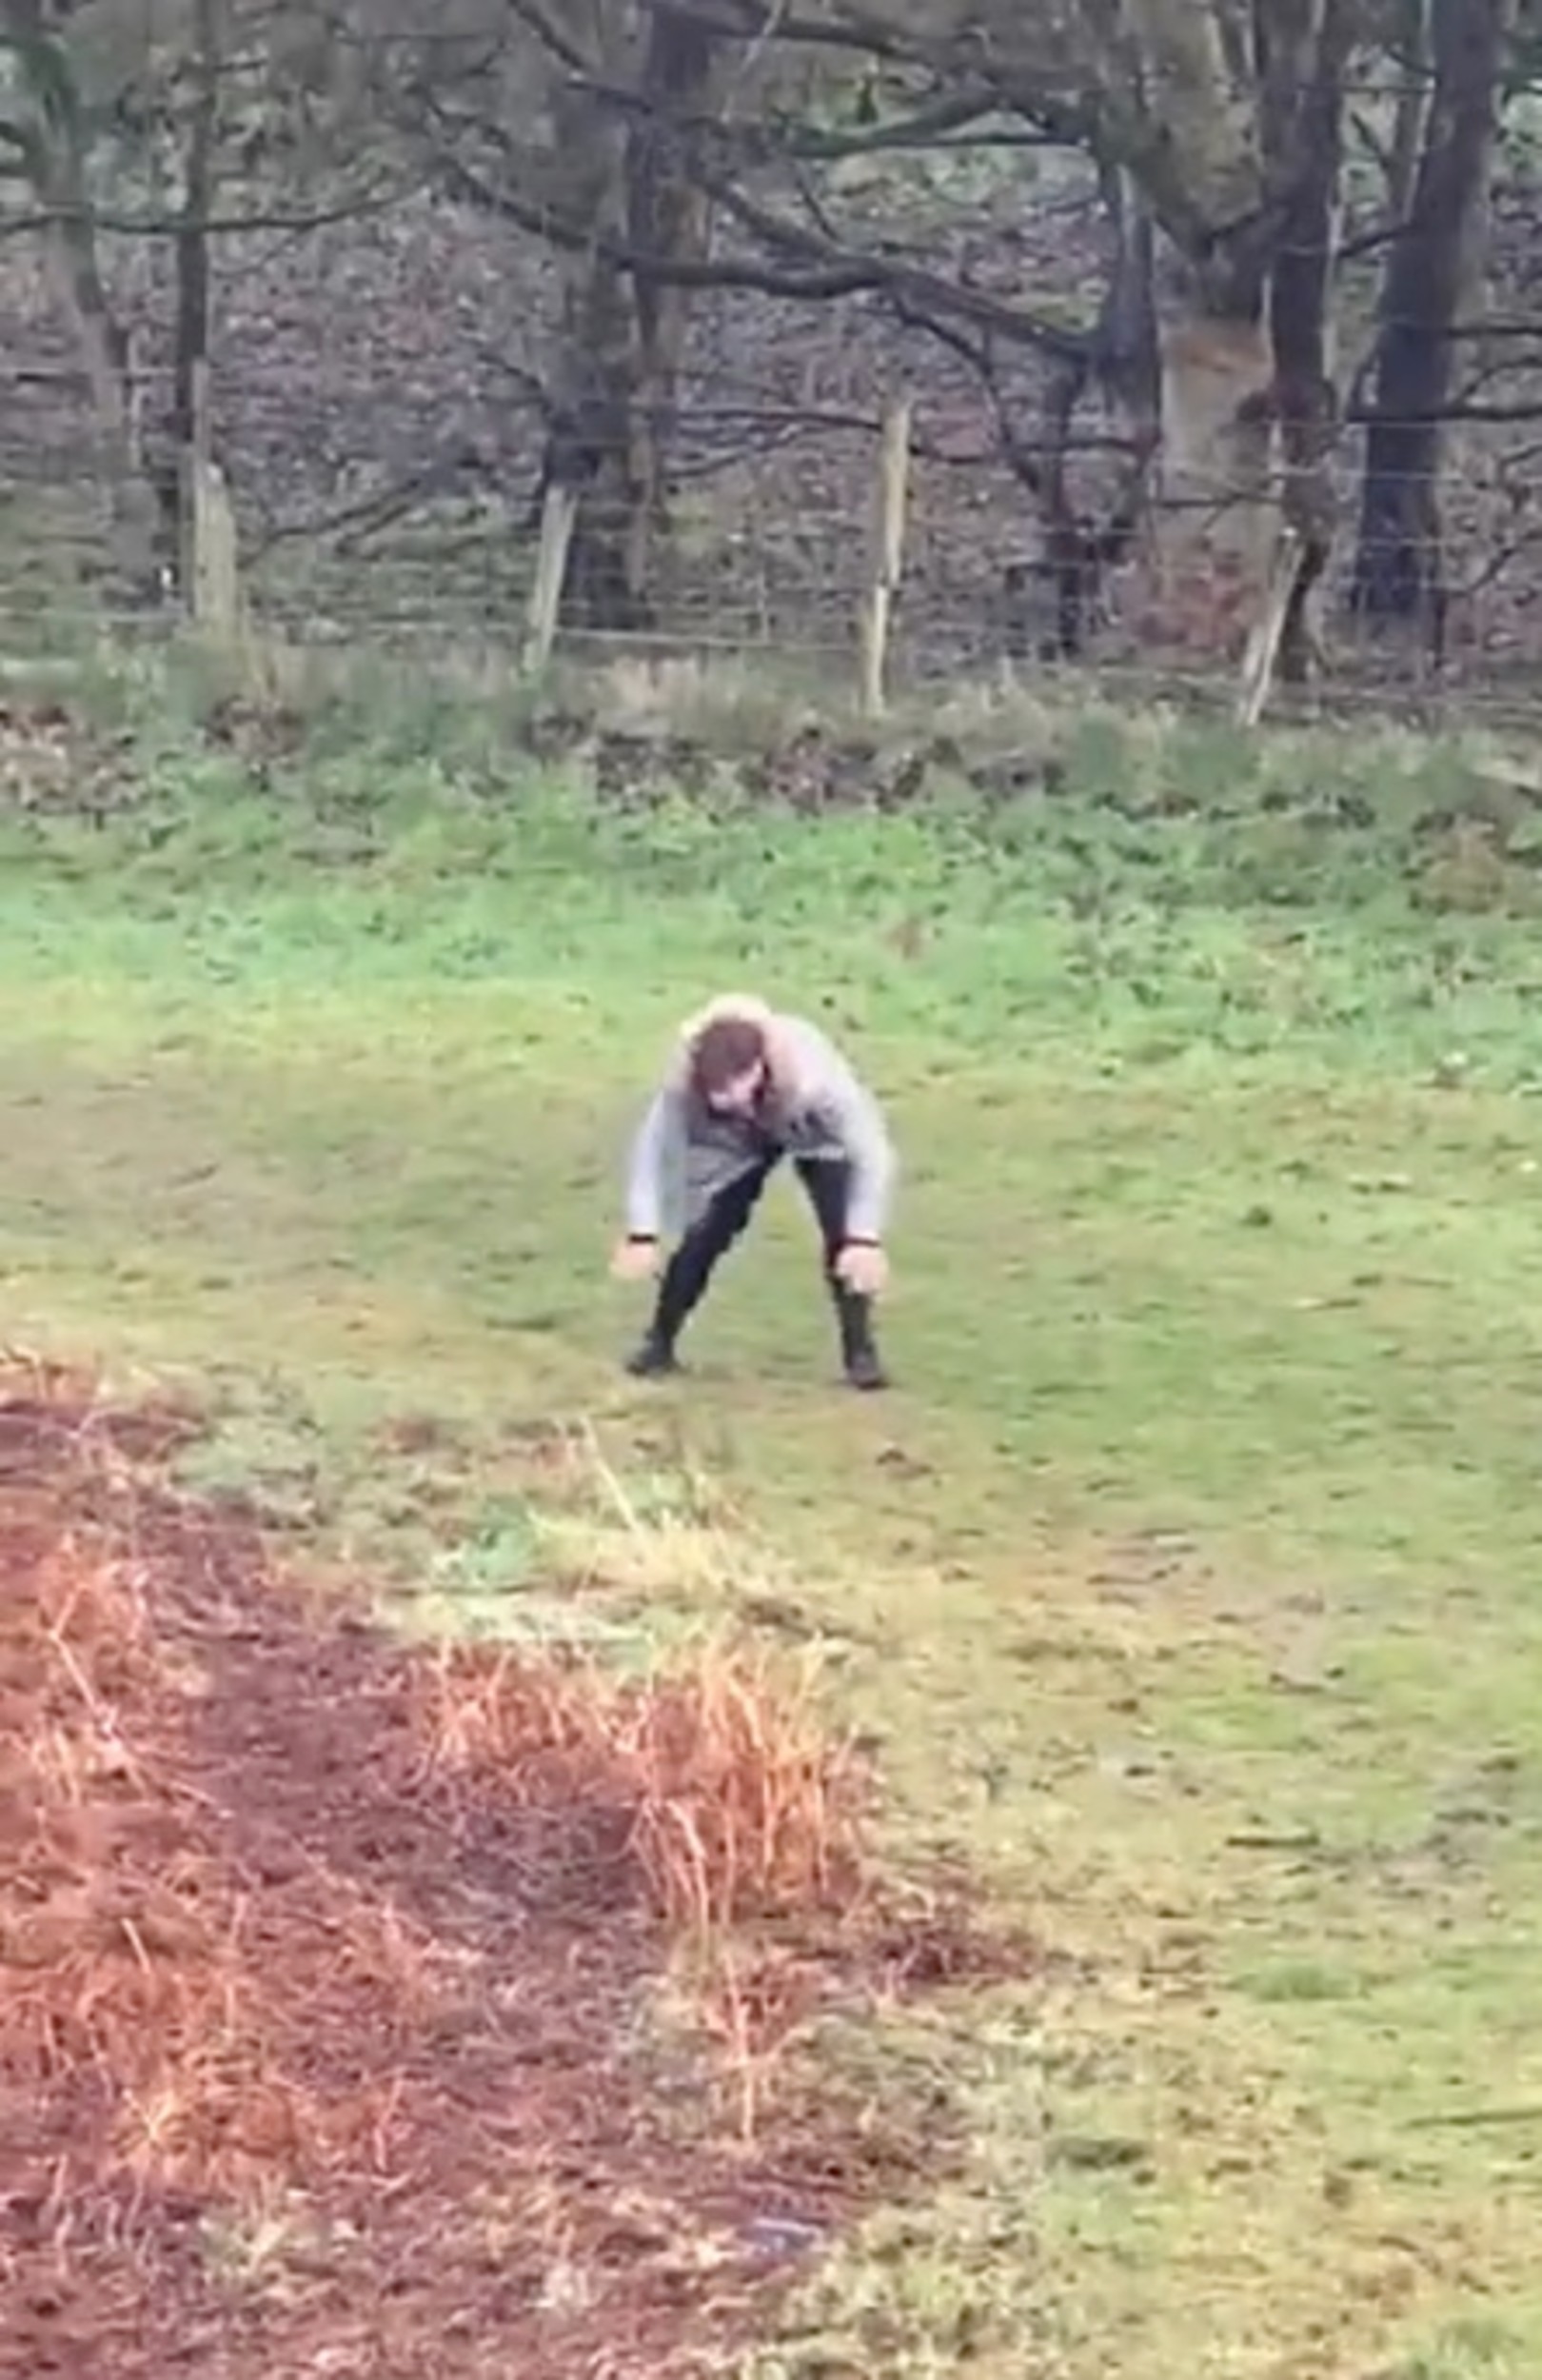 Man slides down hill on date - Viral News Scotland